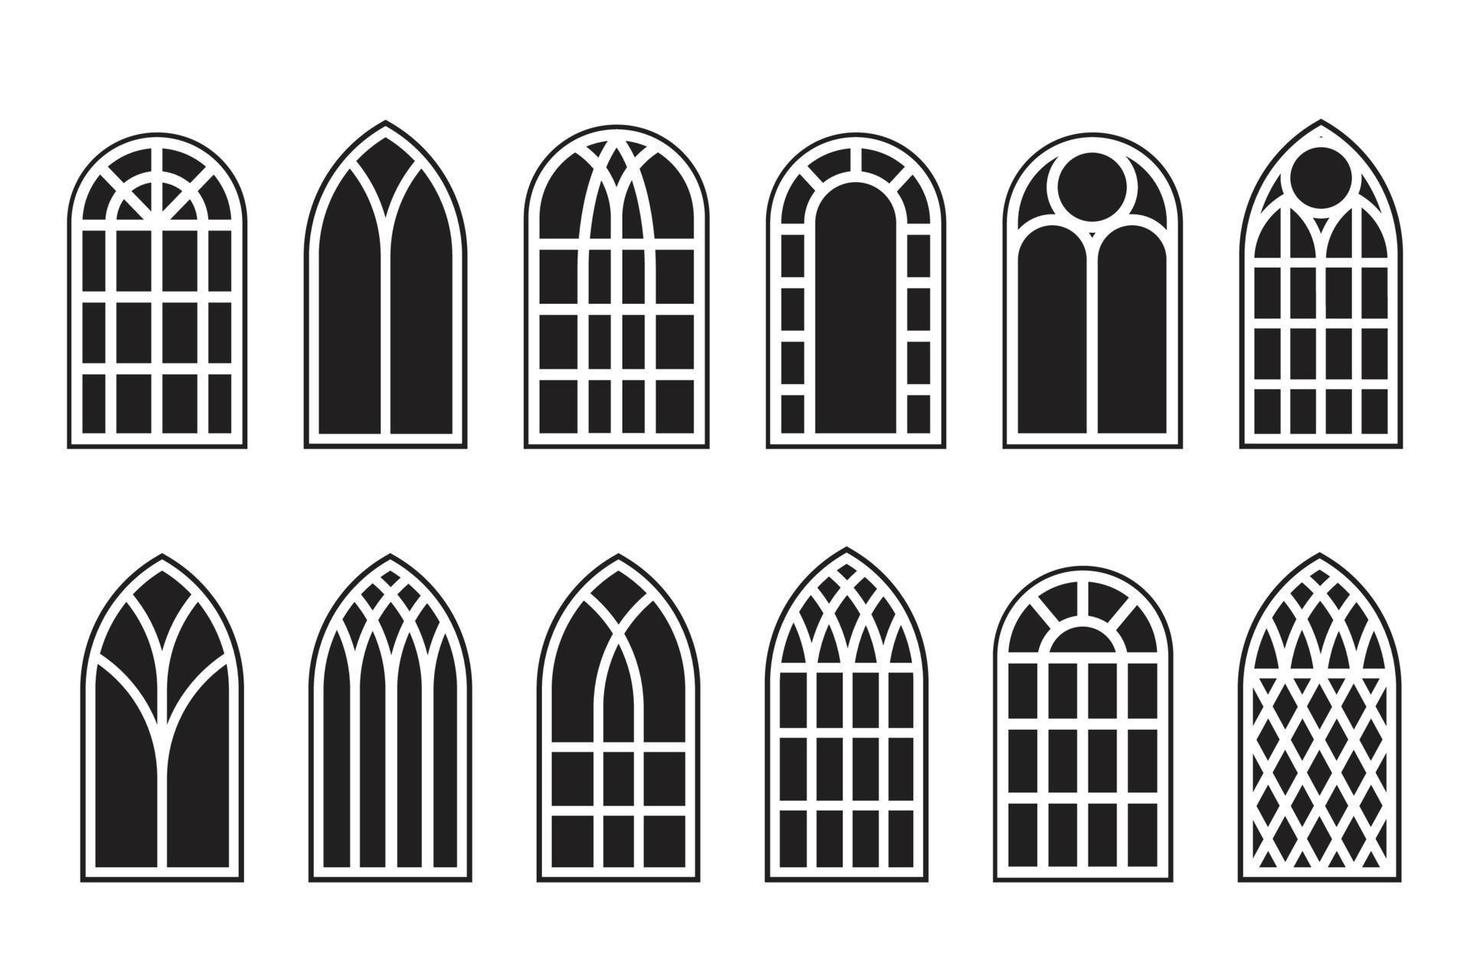 Conjunto de contorno de ventanas góticas. silueta de los marcos de la iglesia de vidrieras de época. elemento de la arquitectura tradicional europea. vector